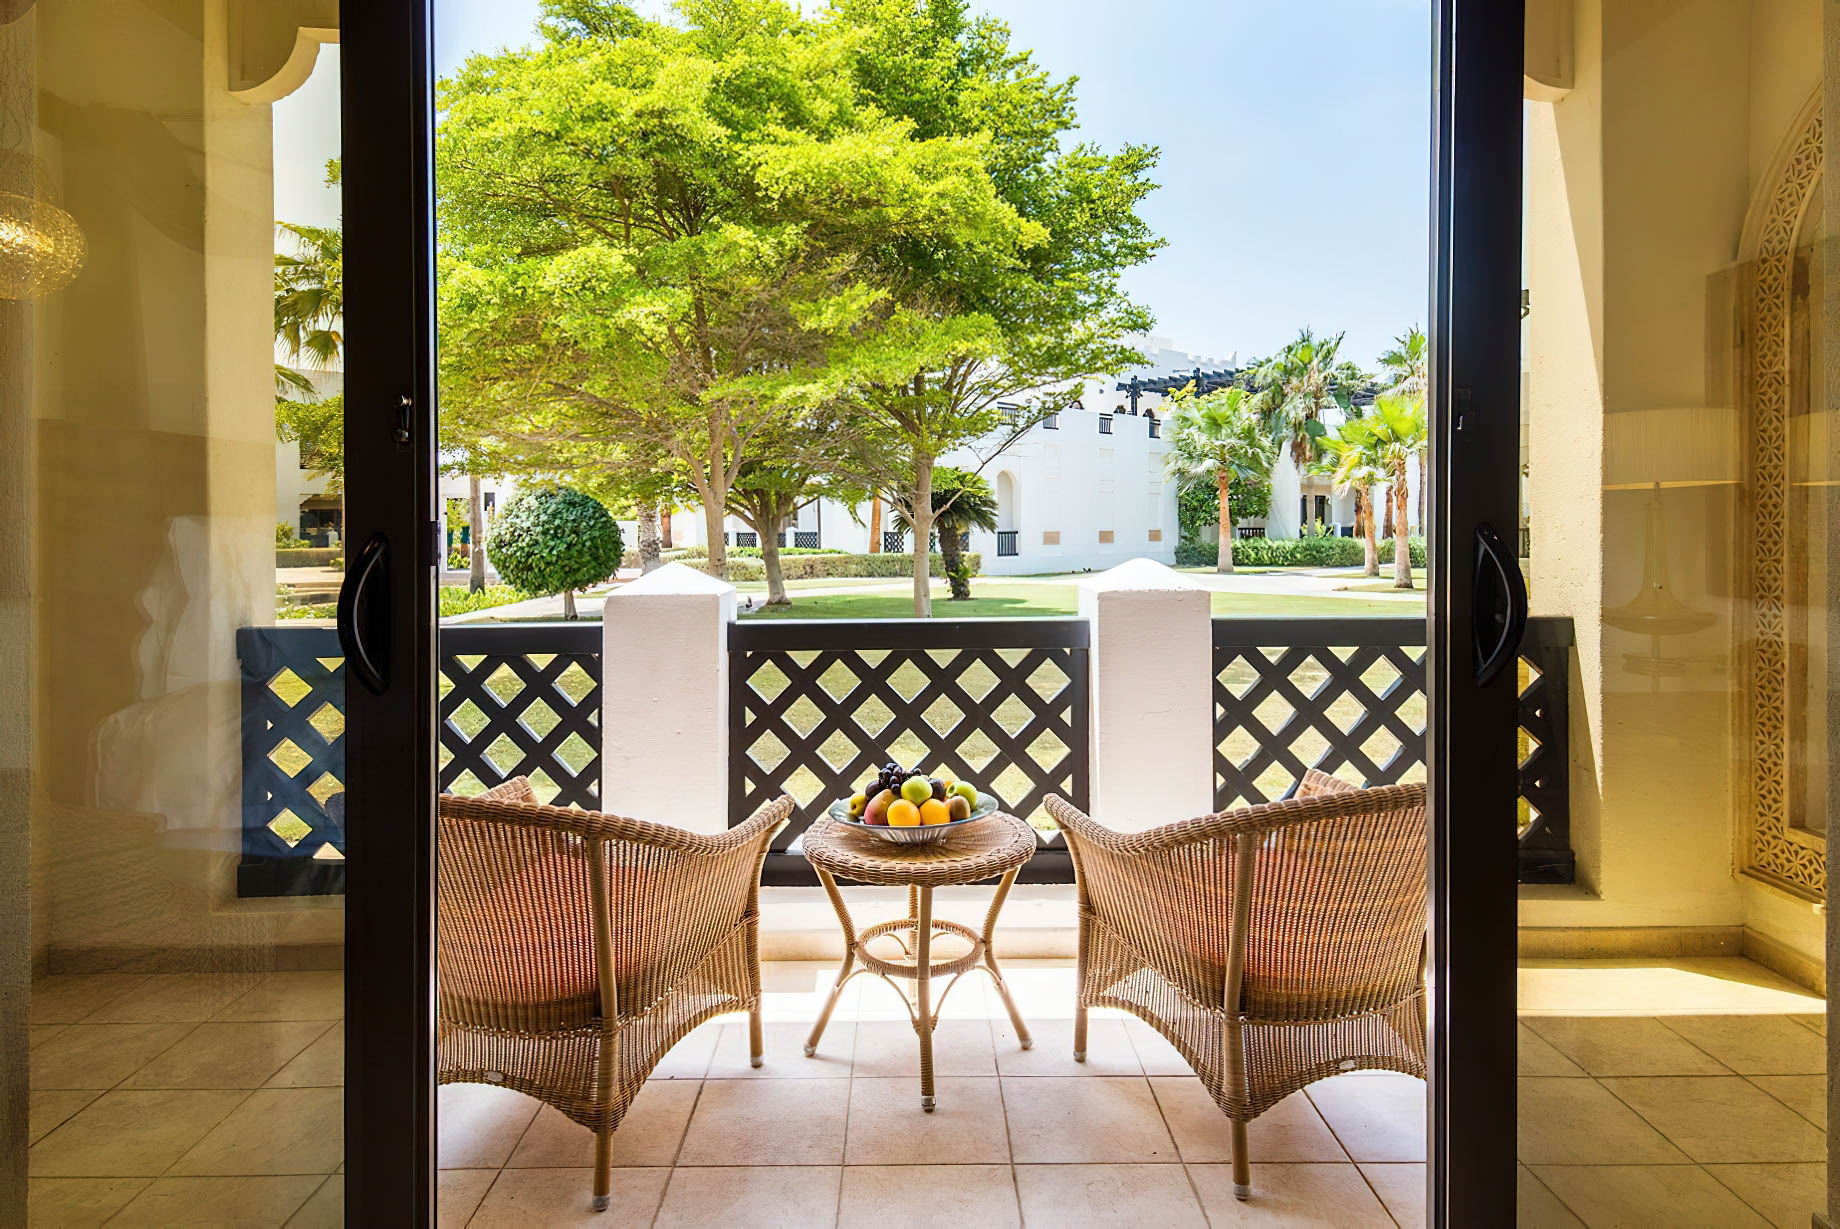 Sharq Village & Spa, A Ritz-Carlton Hotel – Doha, Qatar – Suite View